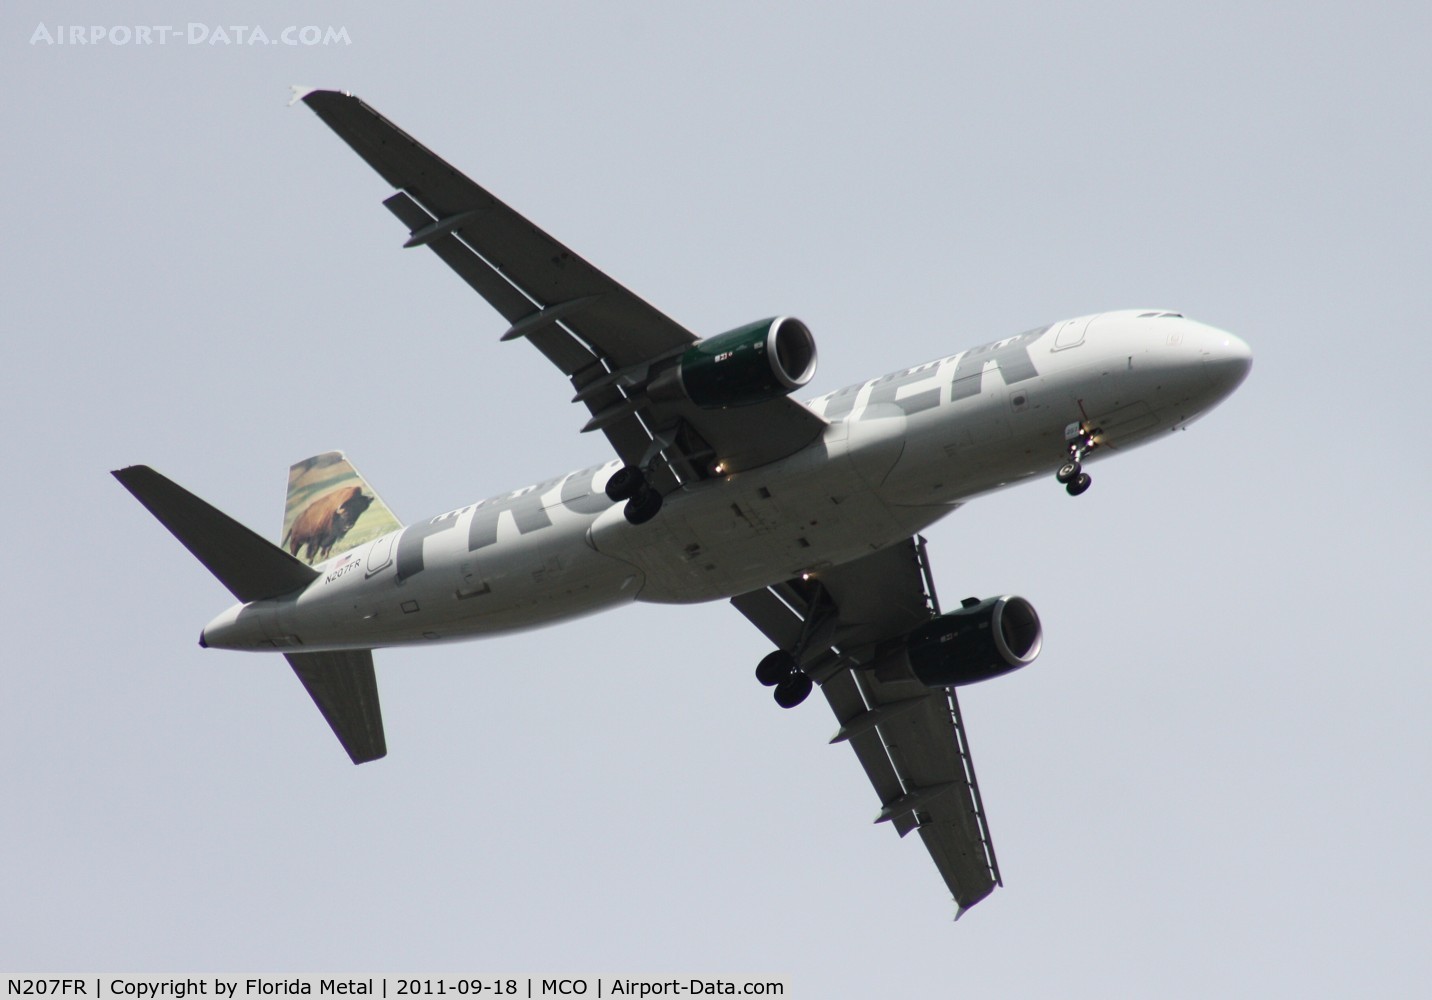 N207FR, 2010 Airbus A320-214 C/N 4307, 